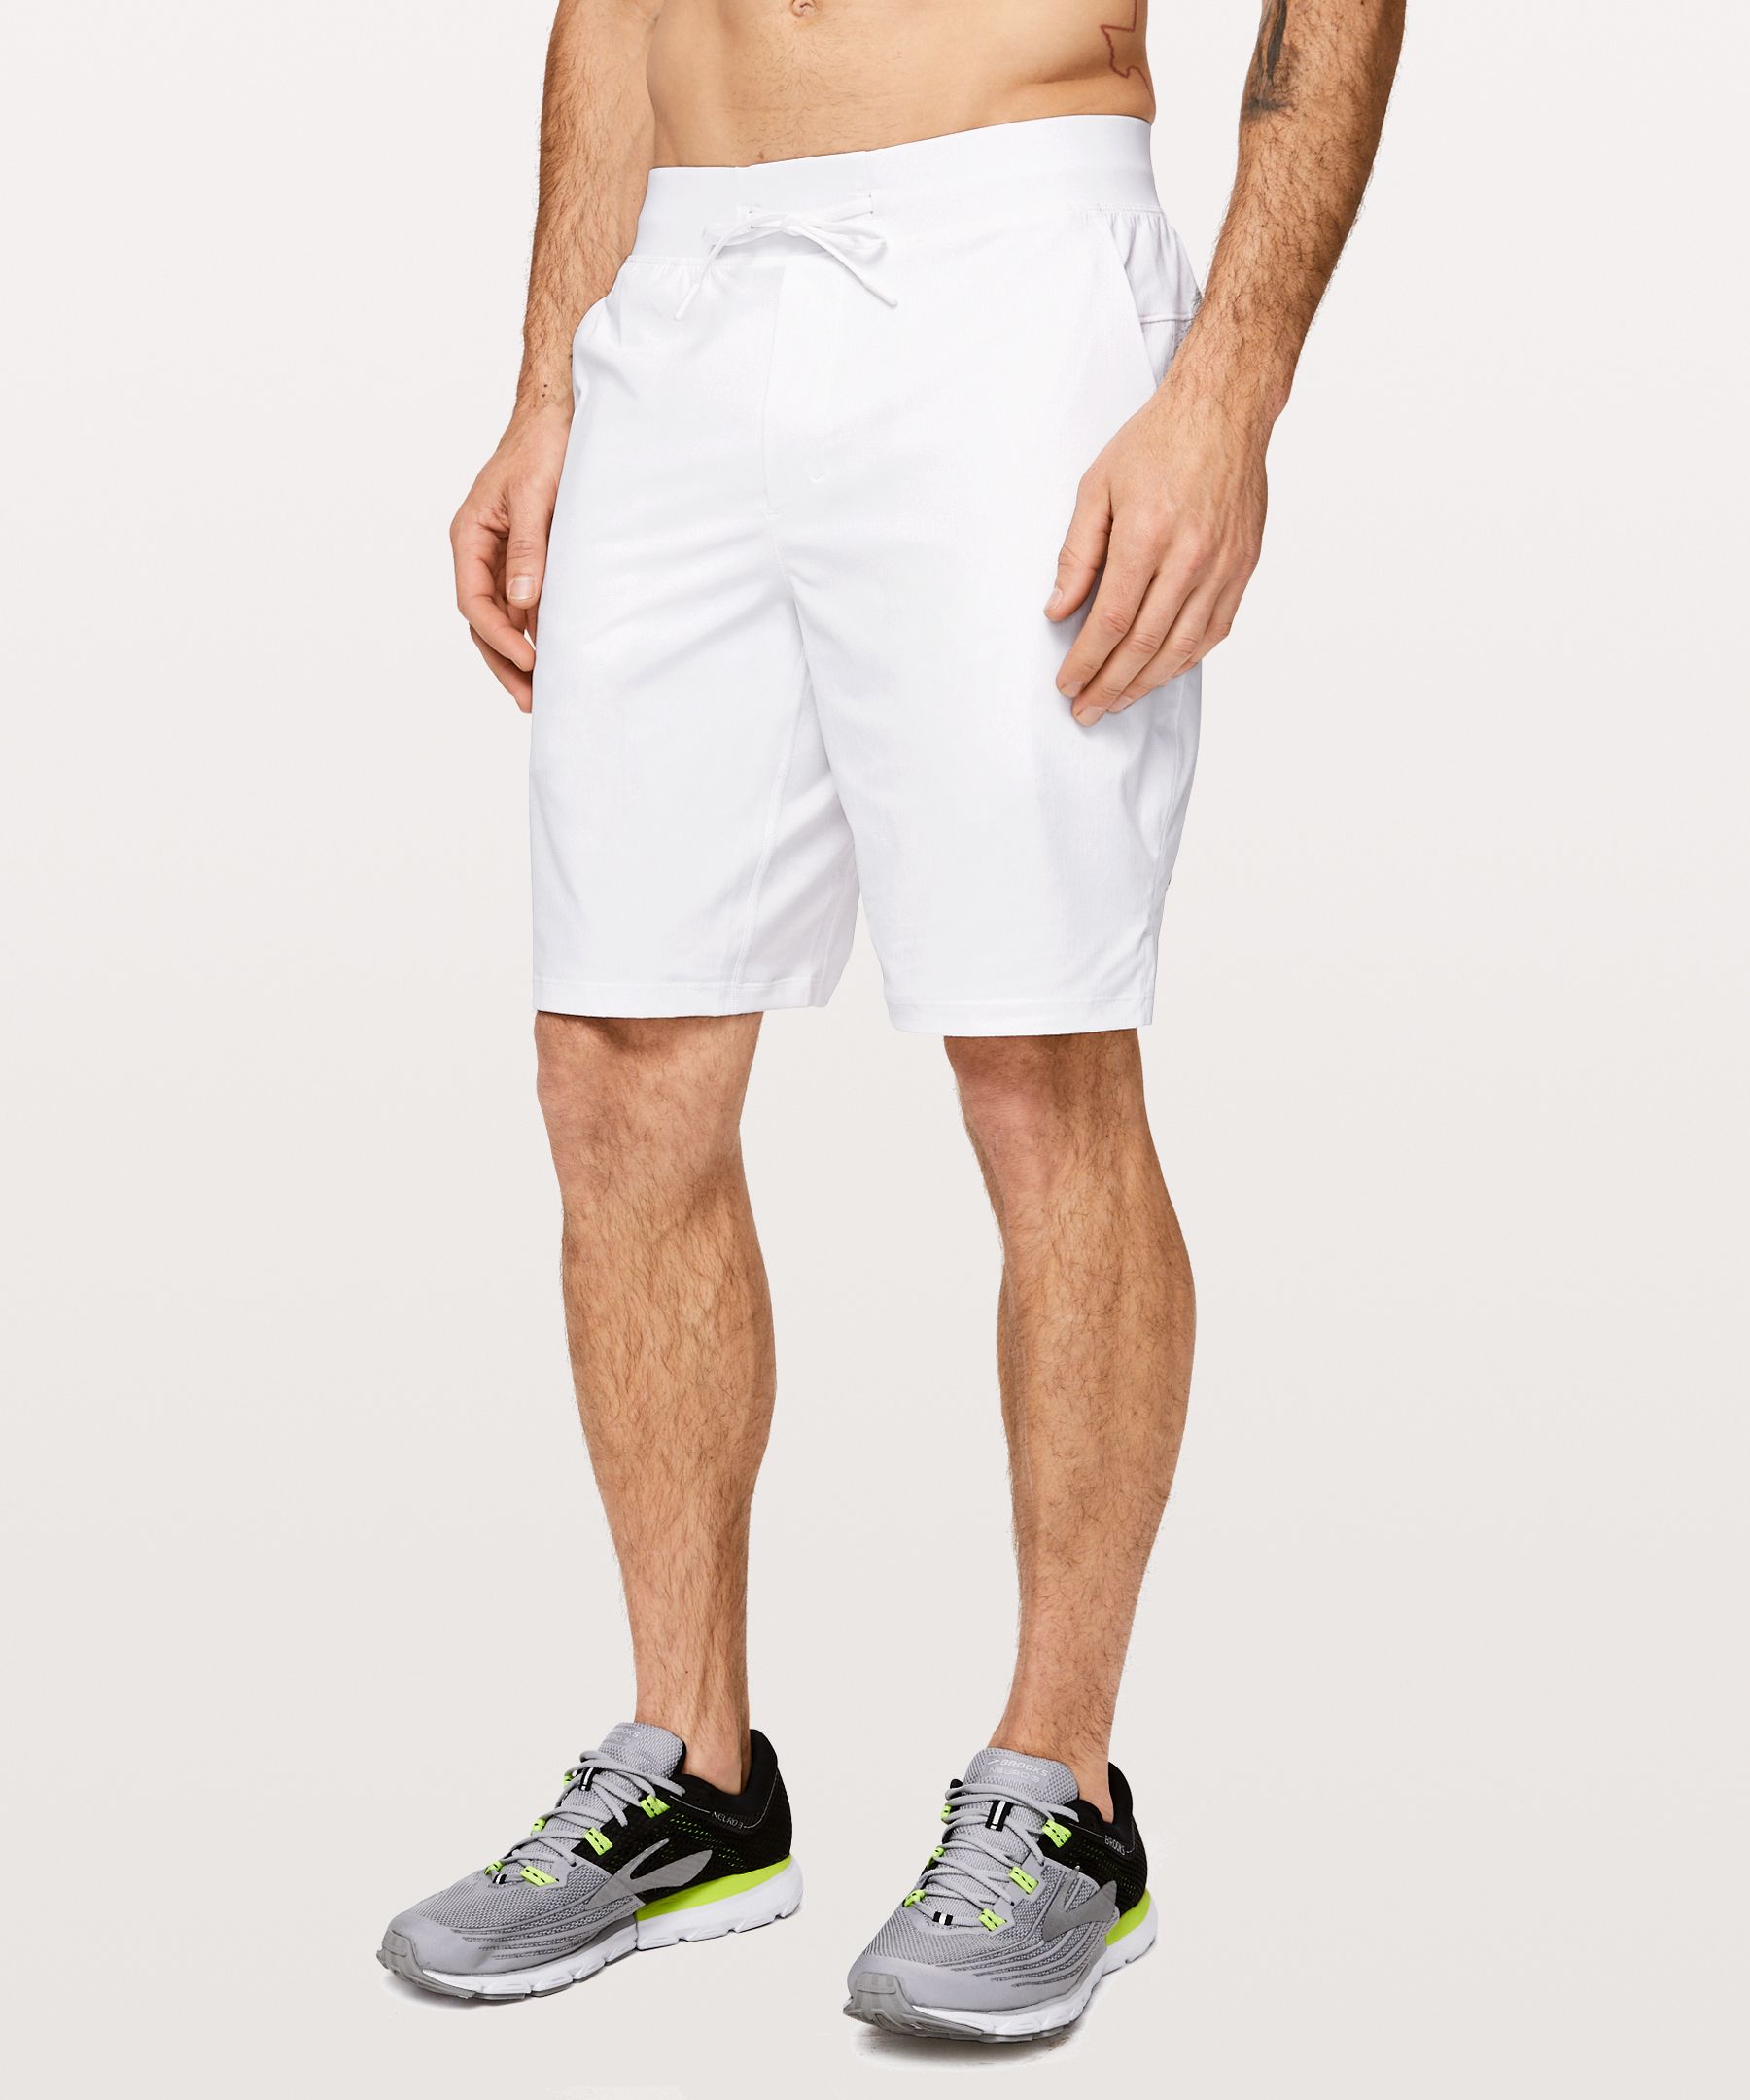 lululemon white shorts